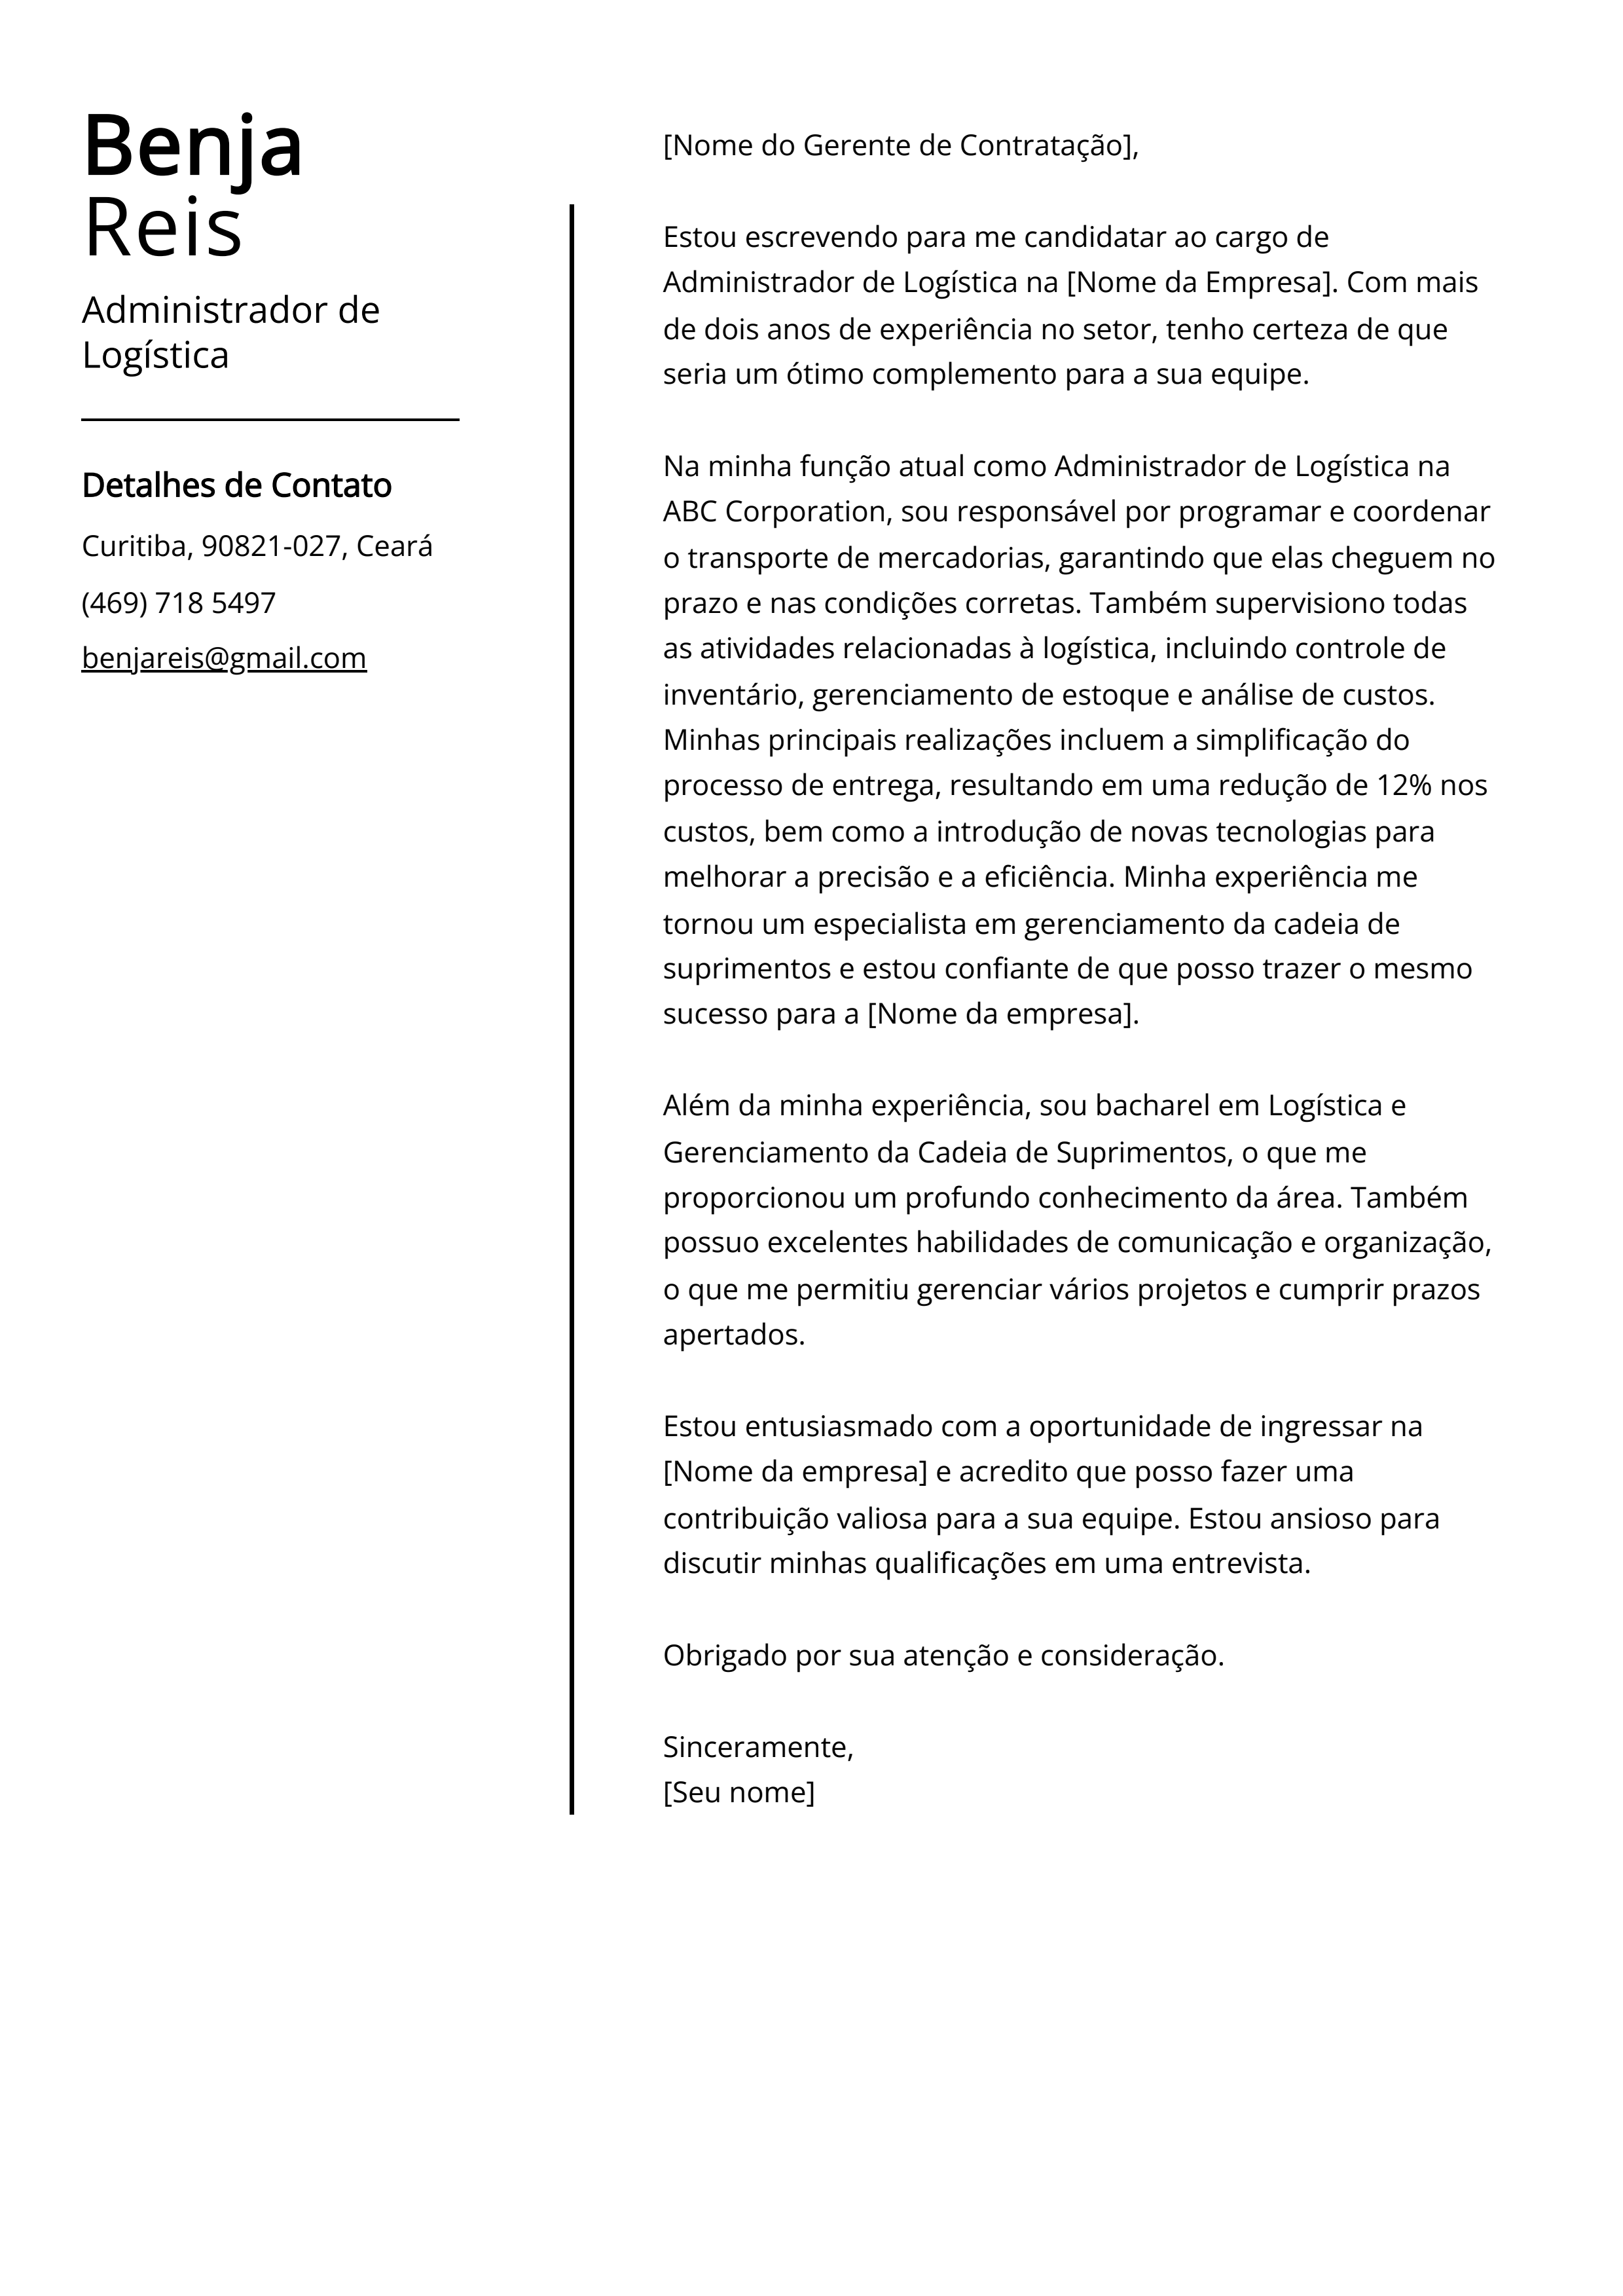 Exemplo de carta de apresentação do Administrador de Logística